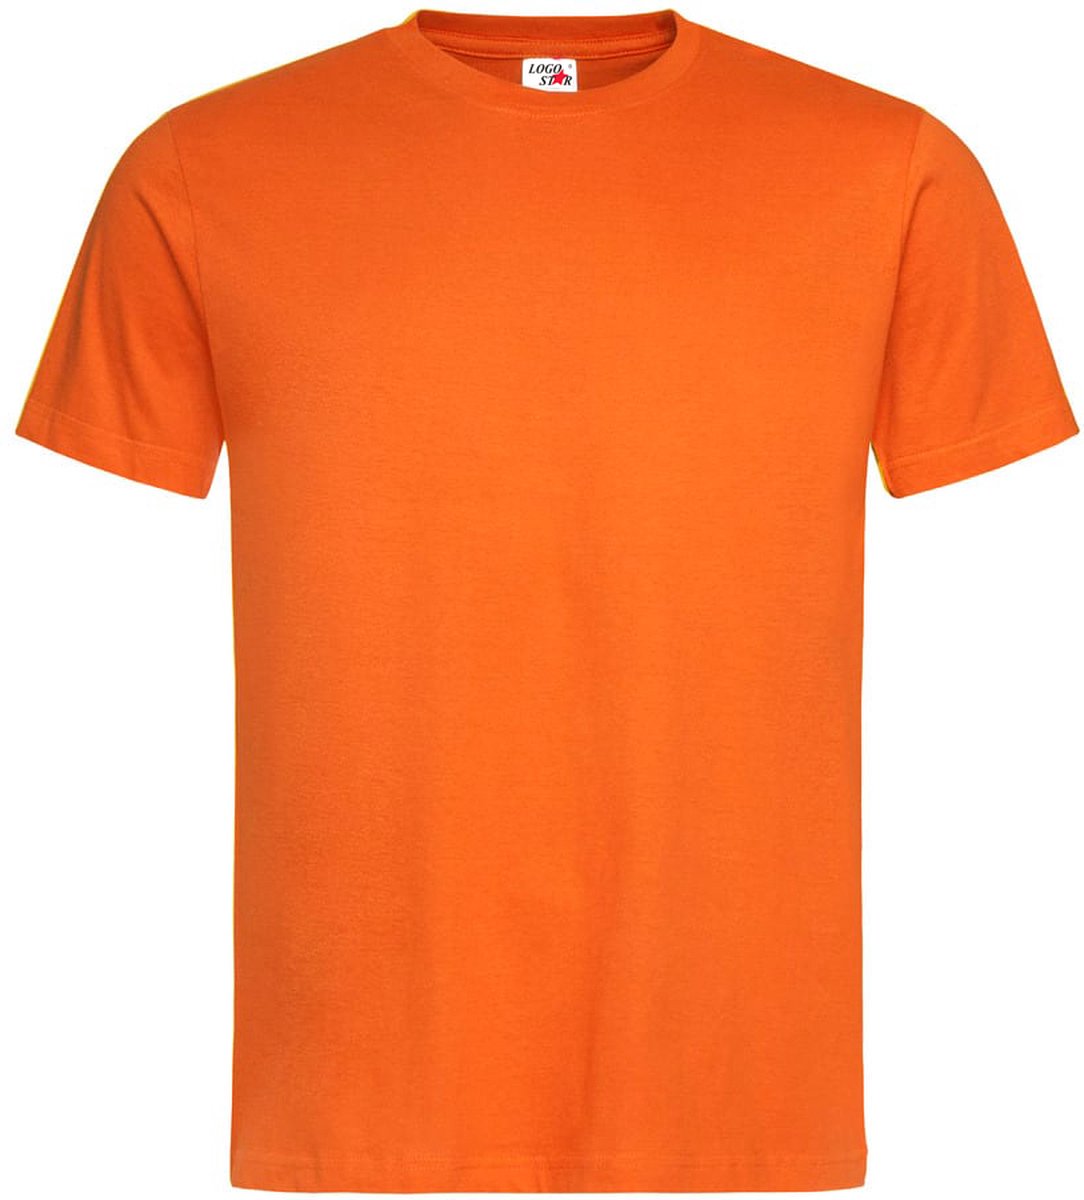 Oranje shirt - T-shirt - Oranje Shirt Dames - Oranje Shirt Heren - Maat L - Koningsdag kleding - Logostar